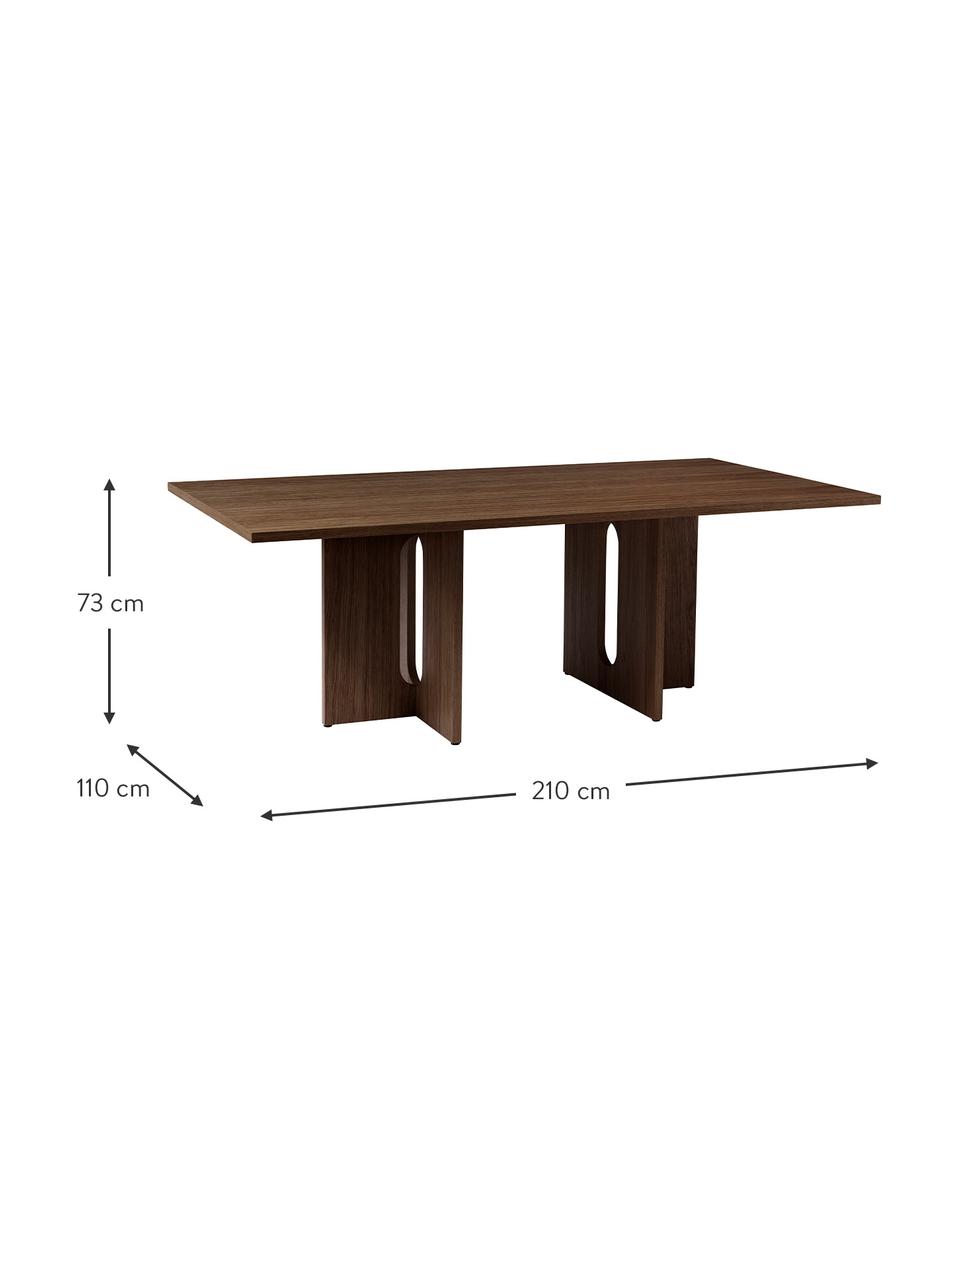 Jídelní stůl s tmavou dubovou dýhou Androgyne, MDF deska (dřevovláknitá deska střední hustoty) s dubovou dýhou, Tmavě hnědá, Š 210 cm, H 110 cm